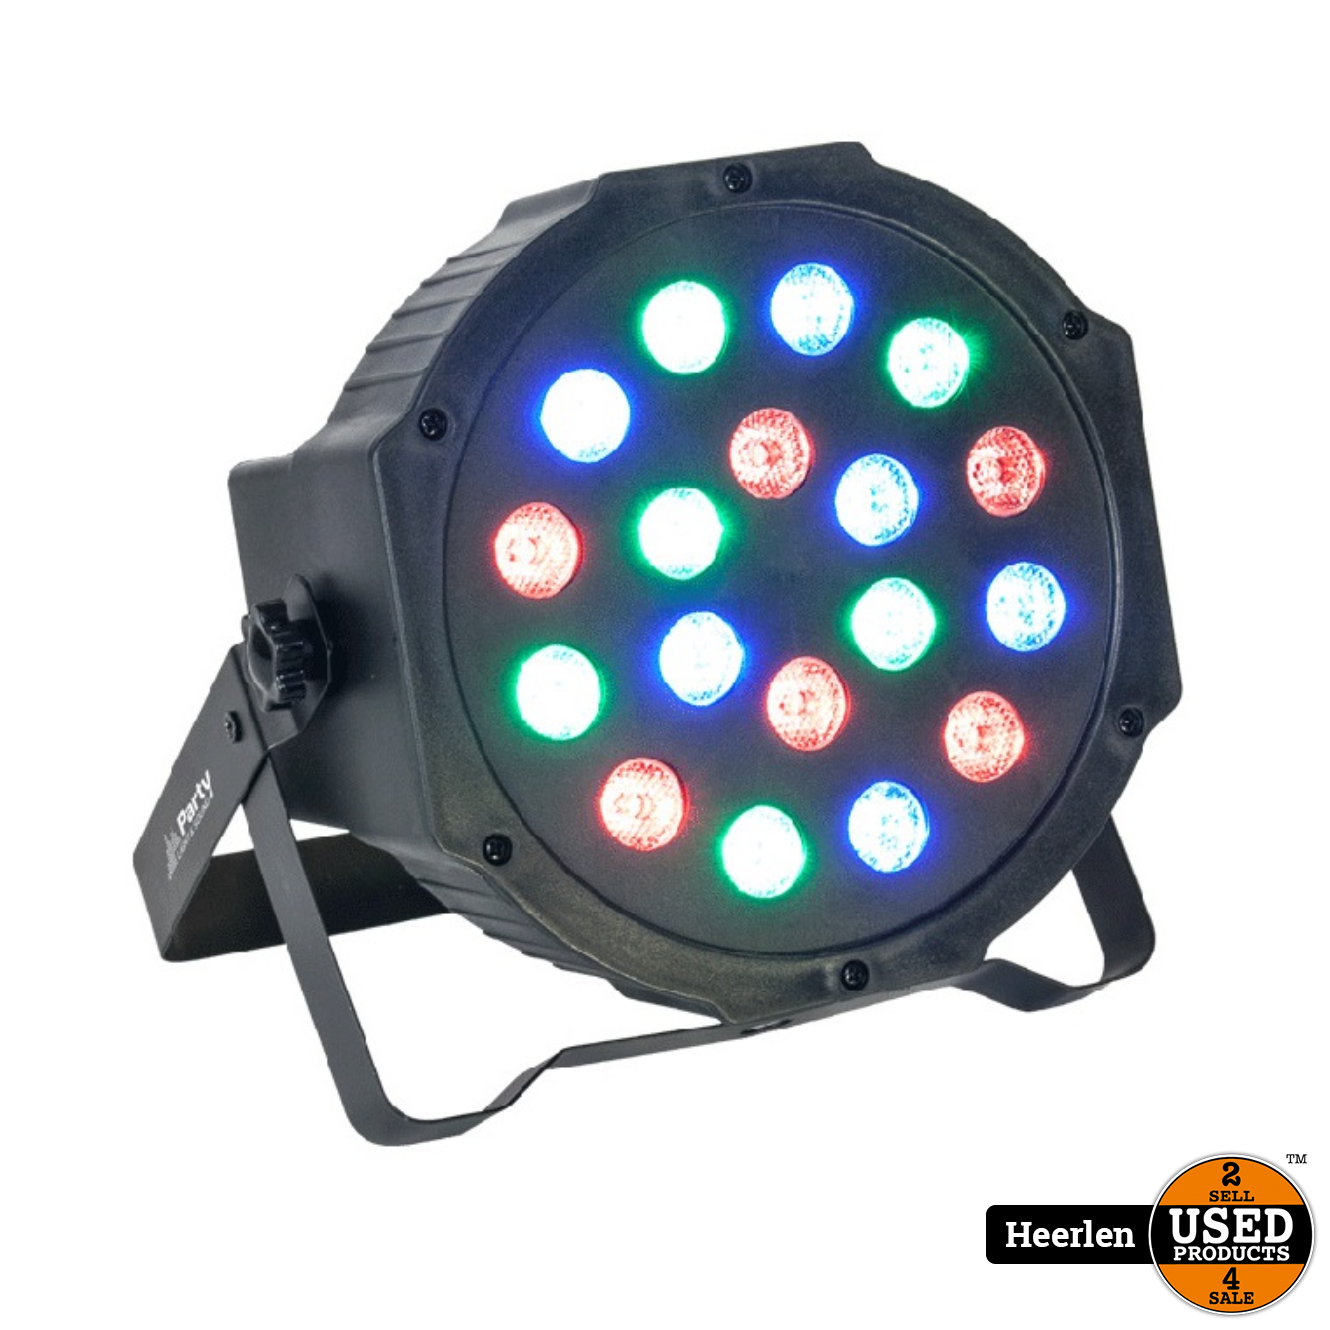 boeket Broek Duwen Party 18W LED PAR LIGHT | RGB | Nieuw | Met Garantie - Used Products Heerlen